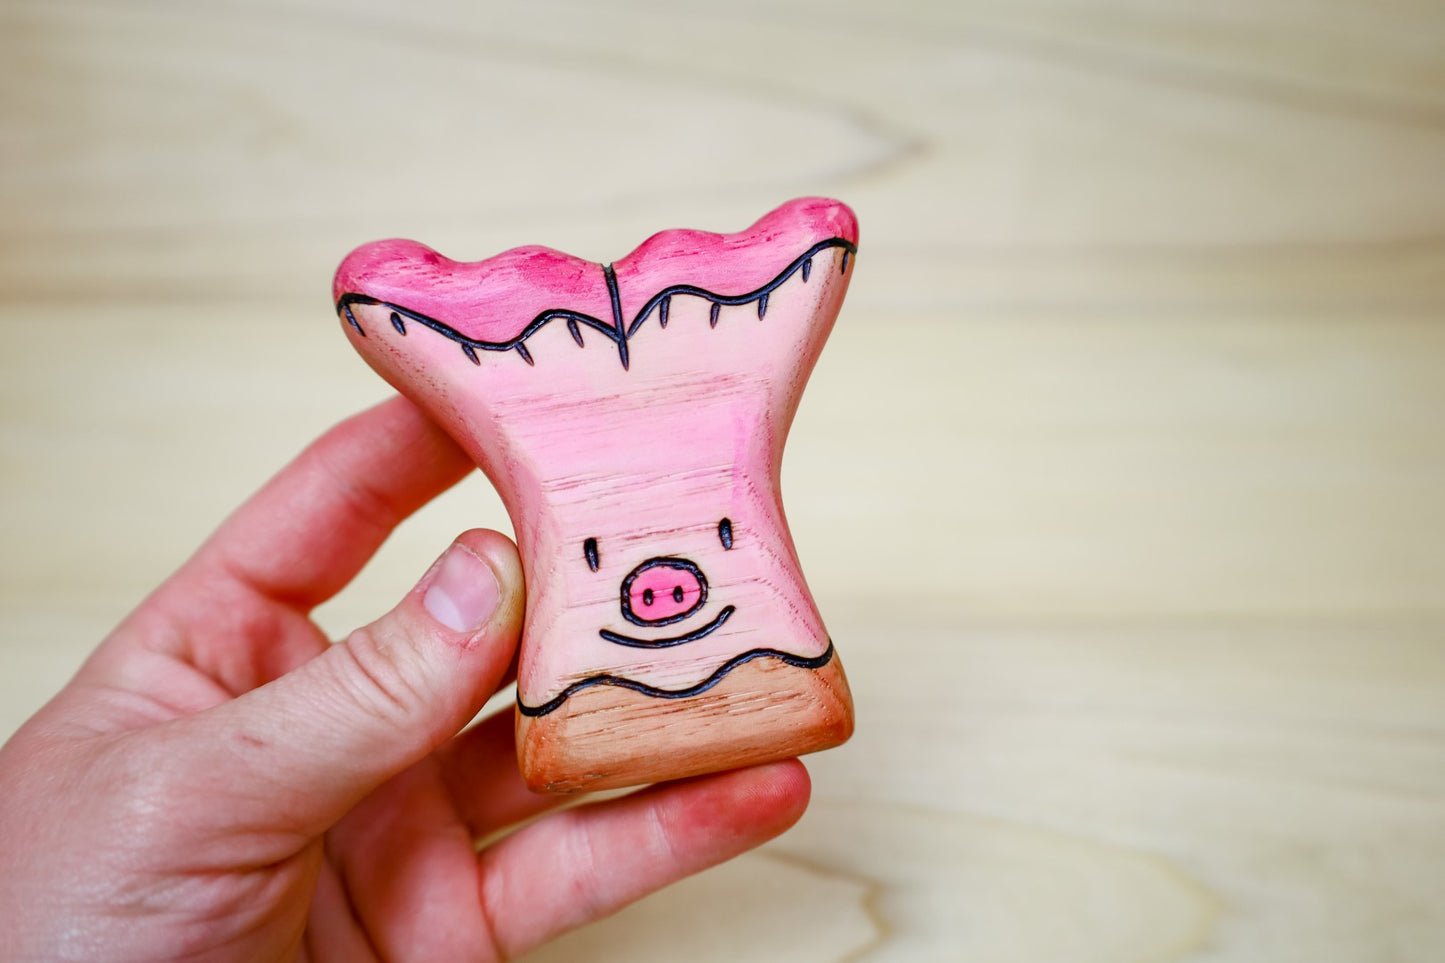 Wooden Pig's Ear Mushroom Toy